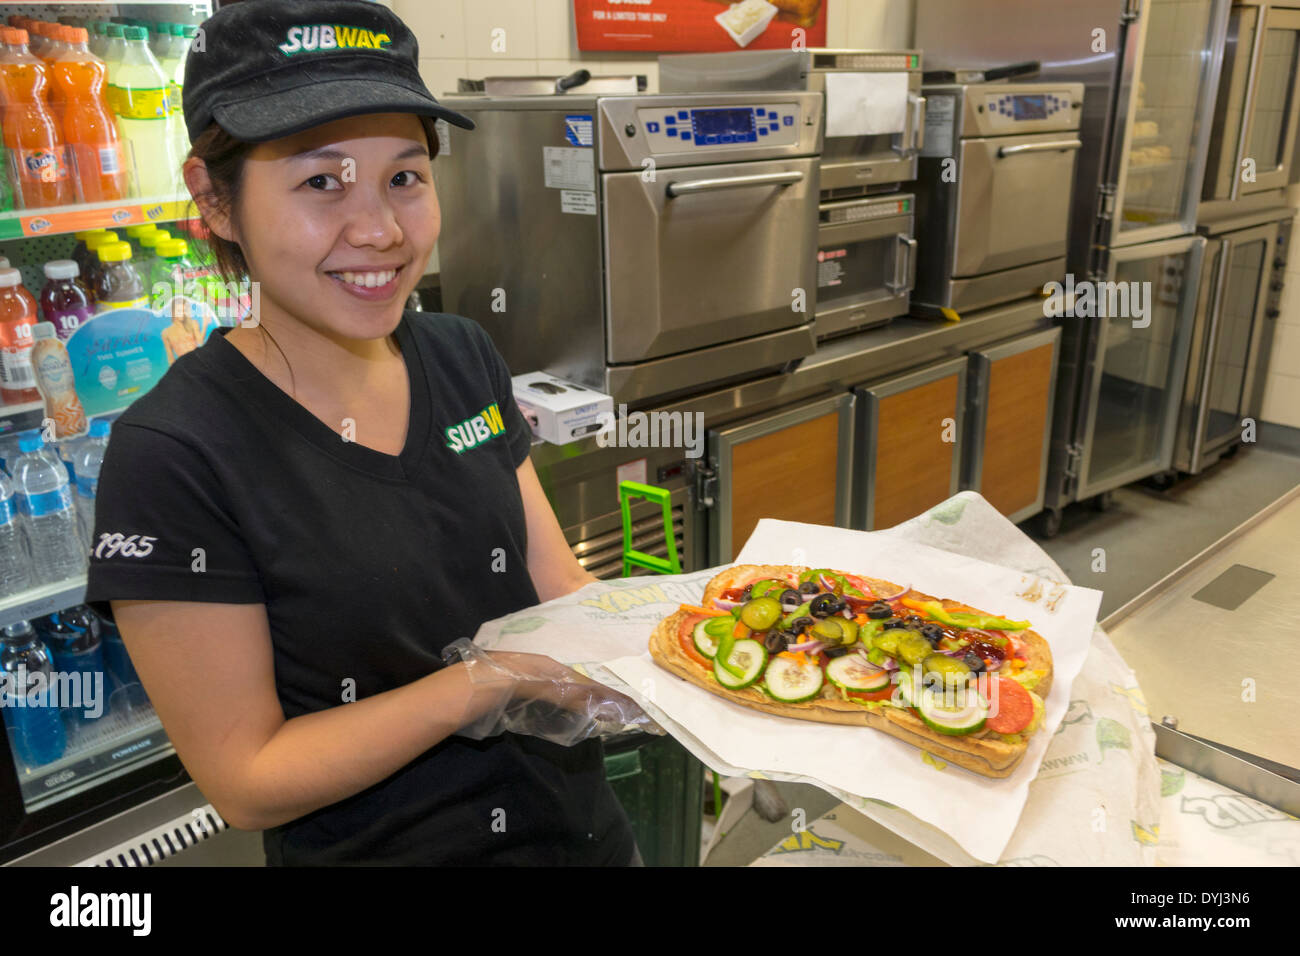 Sydney Australie,métro,train,sandwich shop,restaurant restaurants restauration café cafés,femme asiatique femmes,travail,employés travailleurs travaillant Banque D'Images